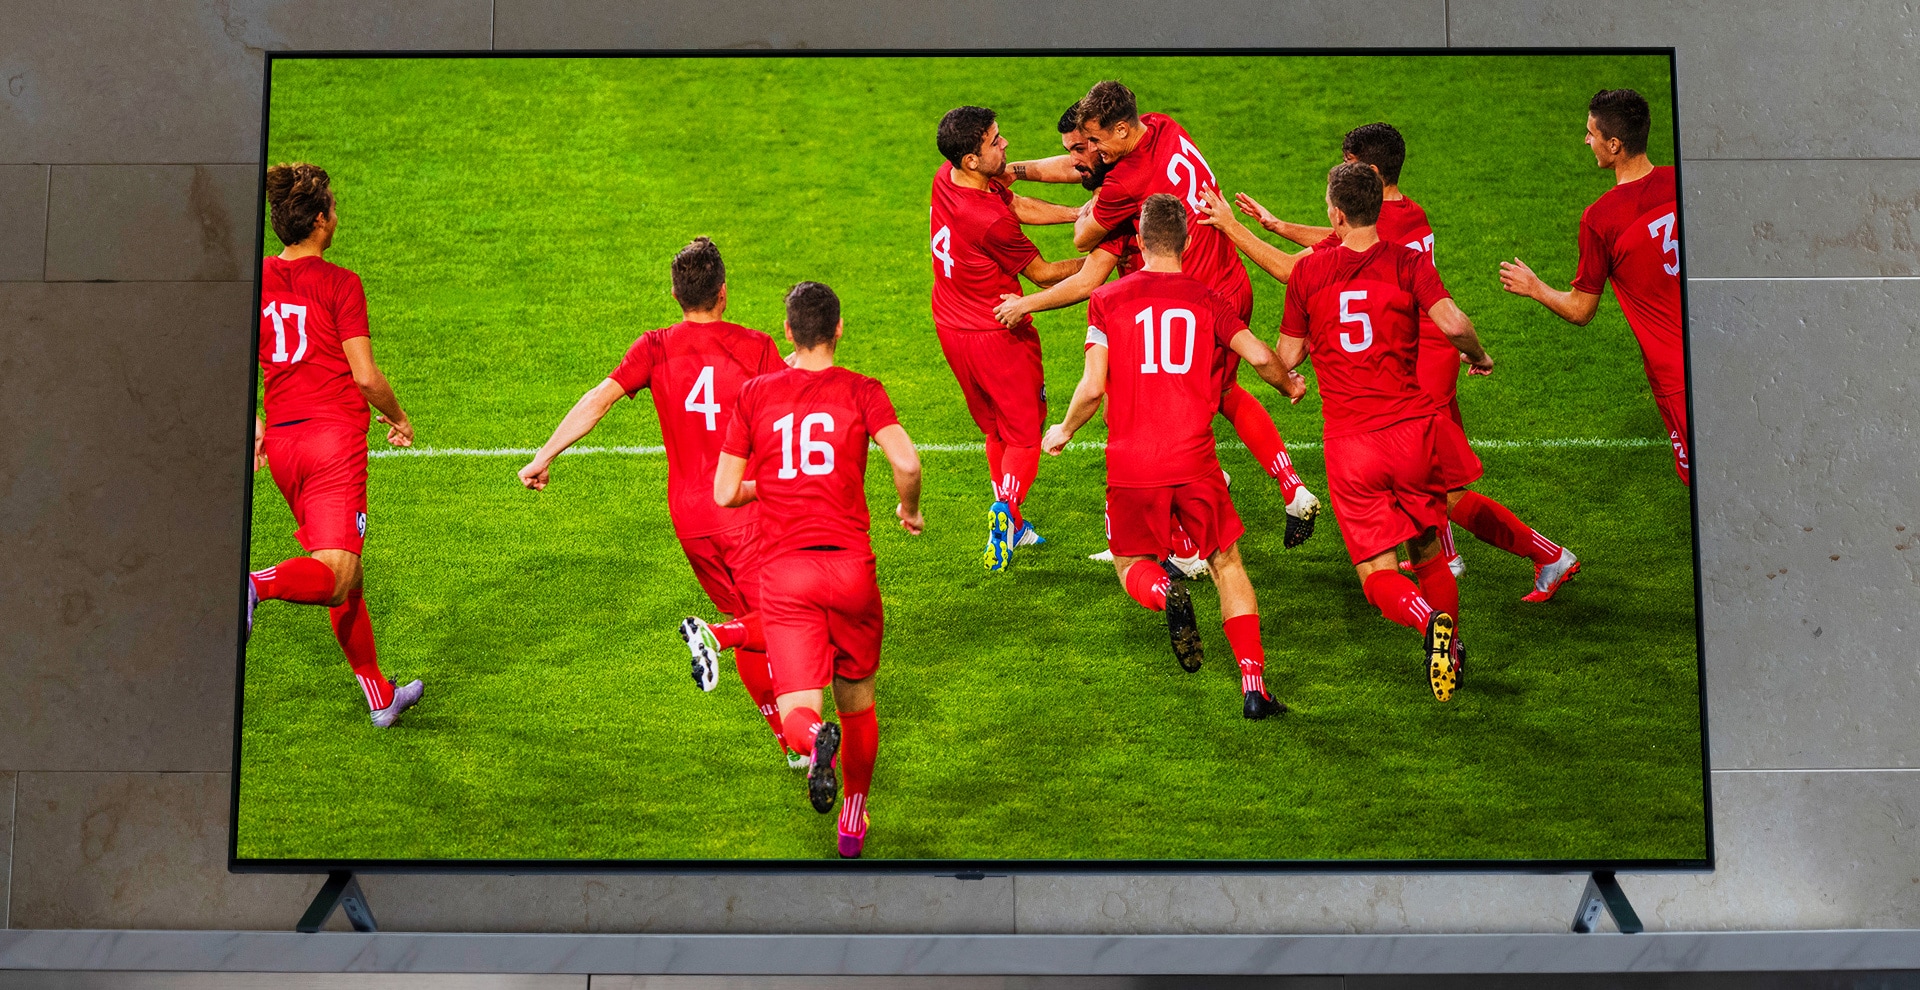 تلفزيون Nanocell معلق على حامل تلفزيون. لاعبو كرة قدم يحتفلون.